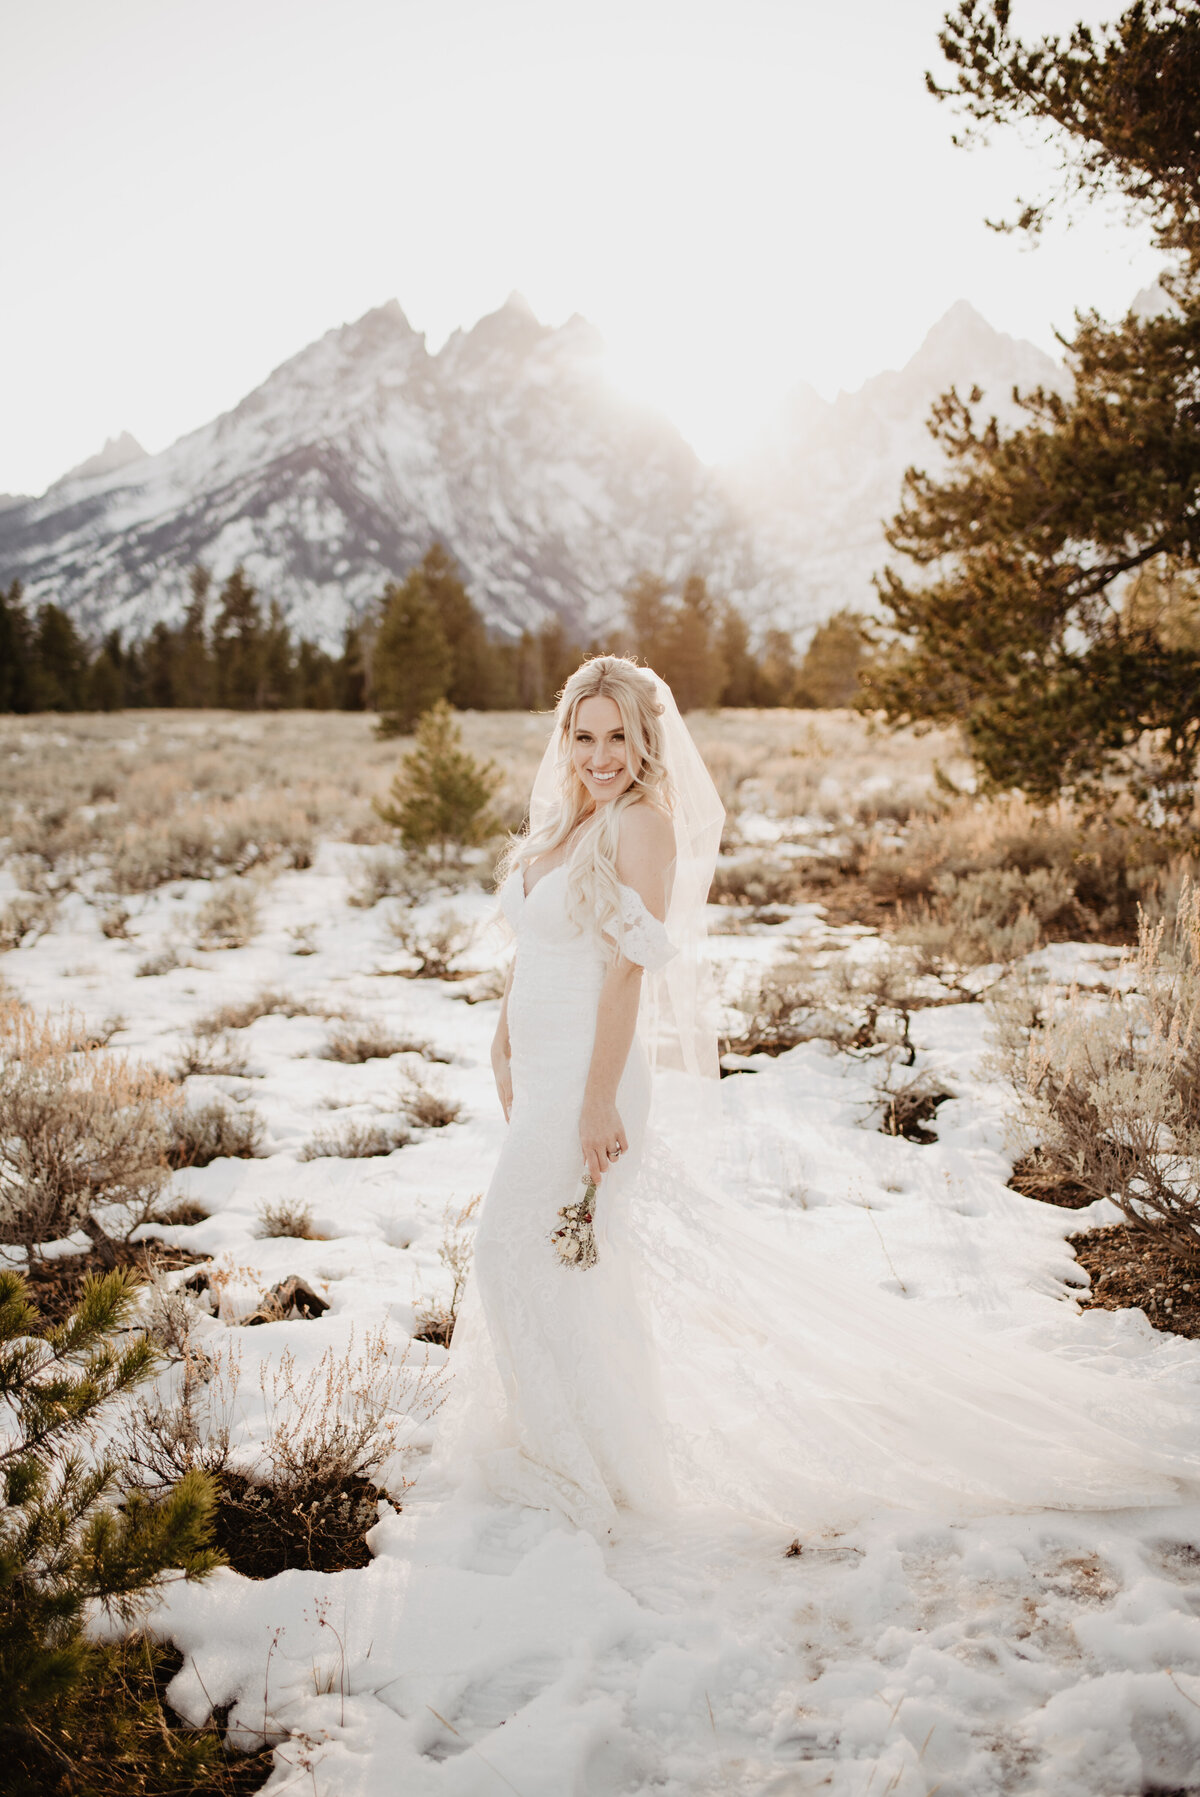 Jackson Hole Photographers capture bride smiling after winter elopement